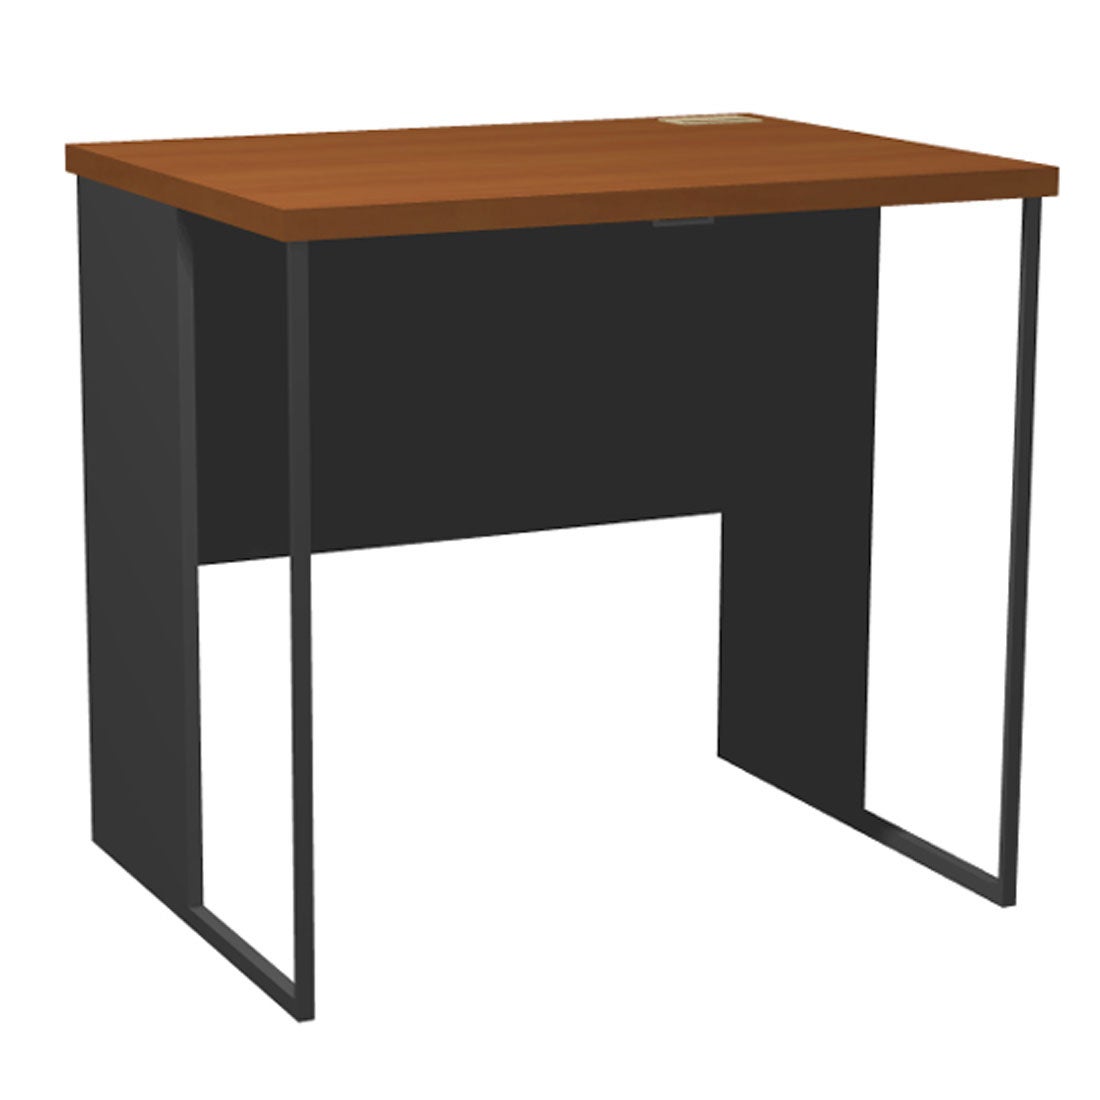 โต๊ะทำงาน ขนาด 80 ซม. รุ่น Able สีเทา01